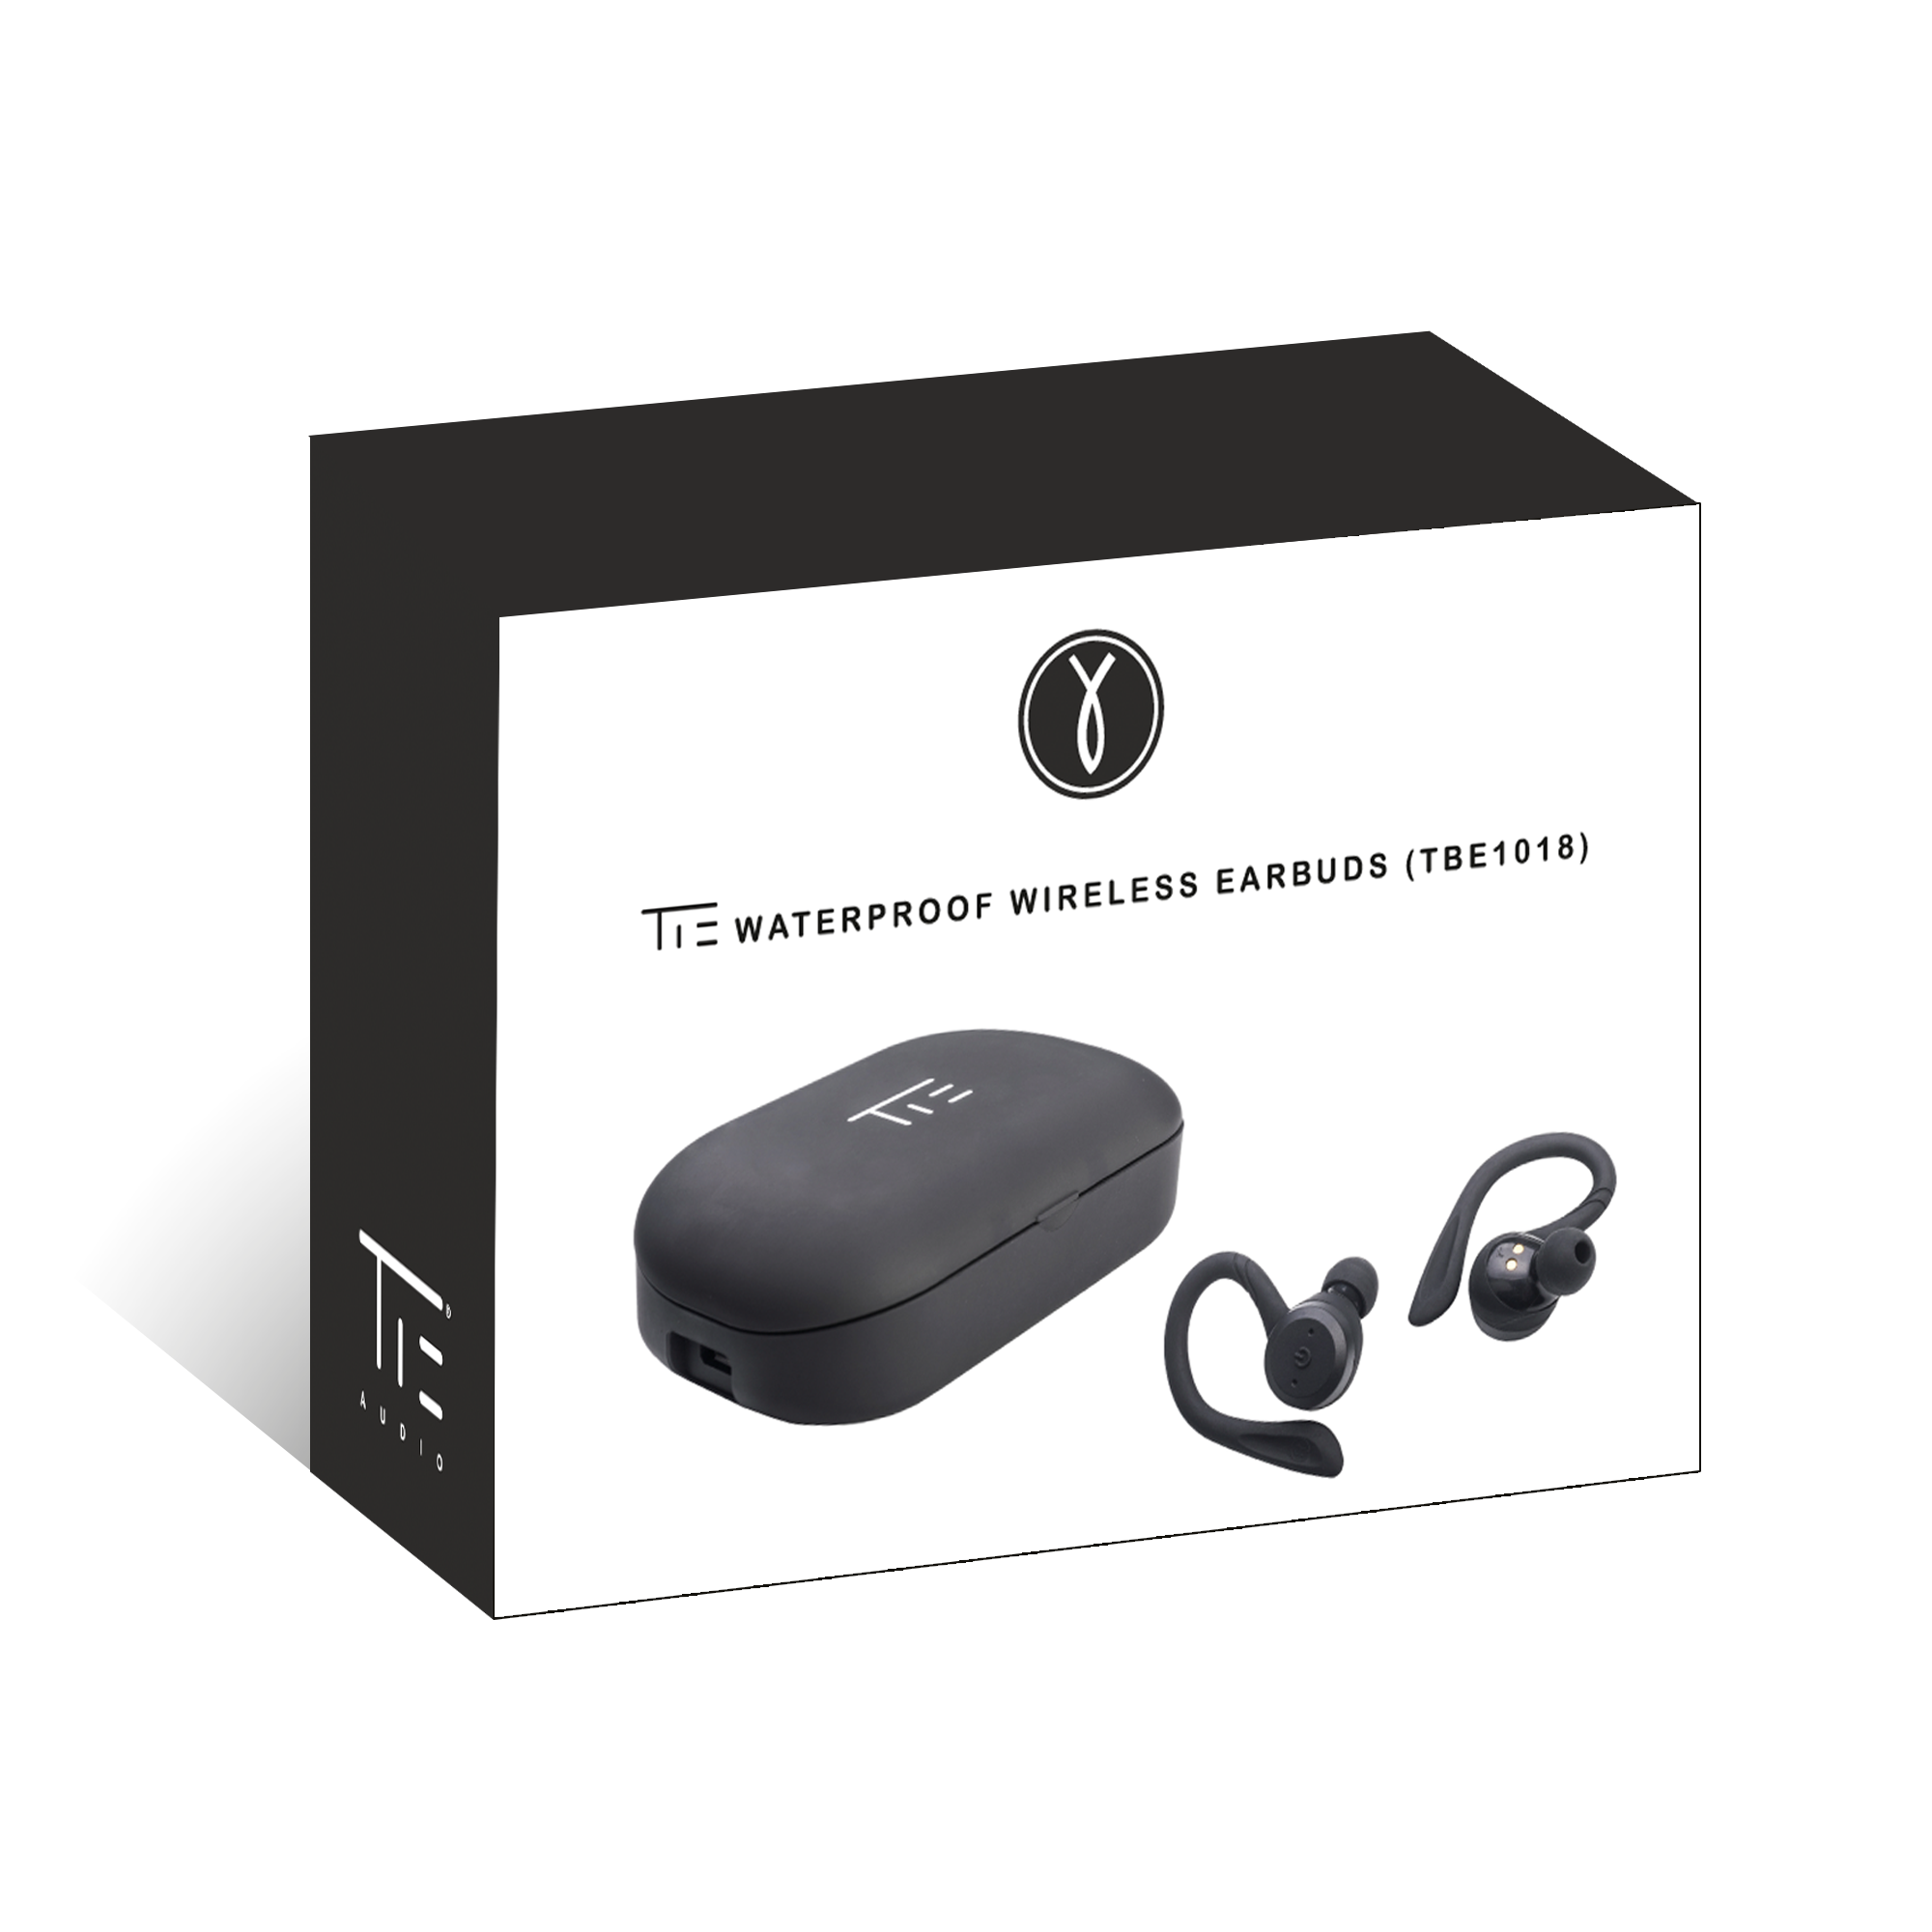 Waterproof Wireless Earbuds Tbe1018